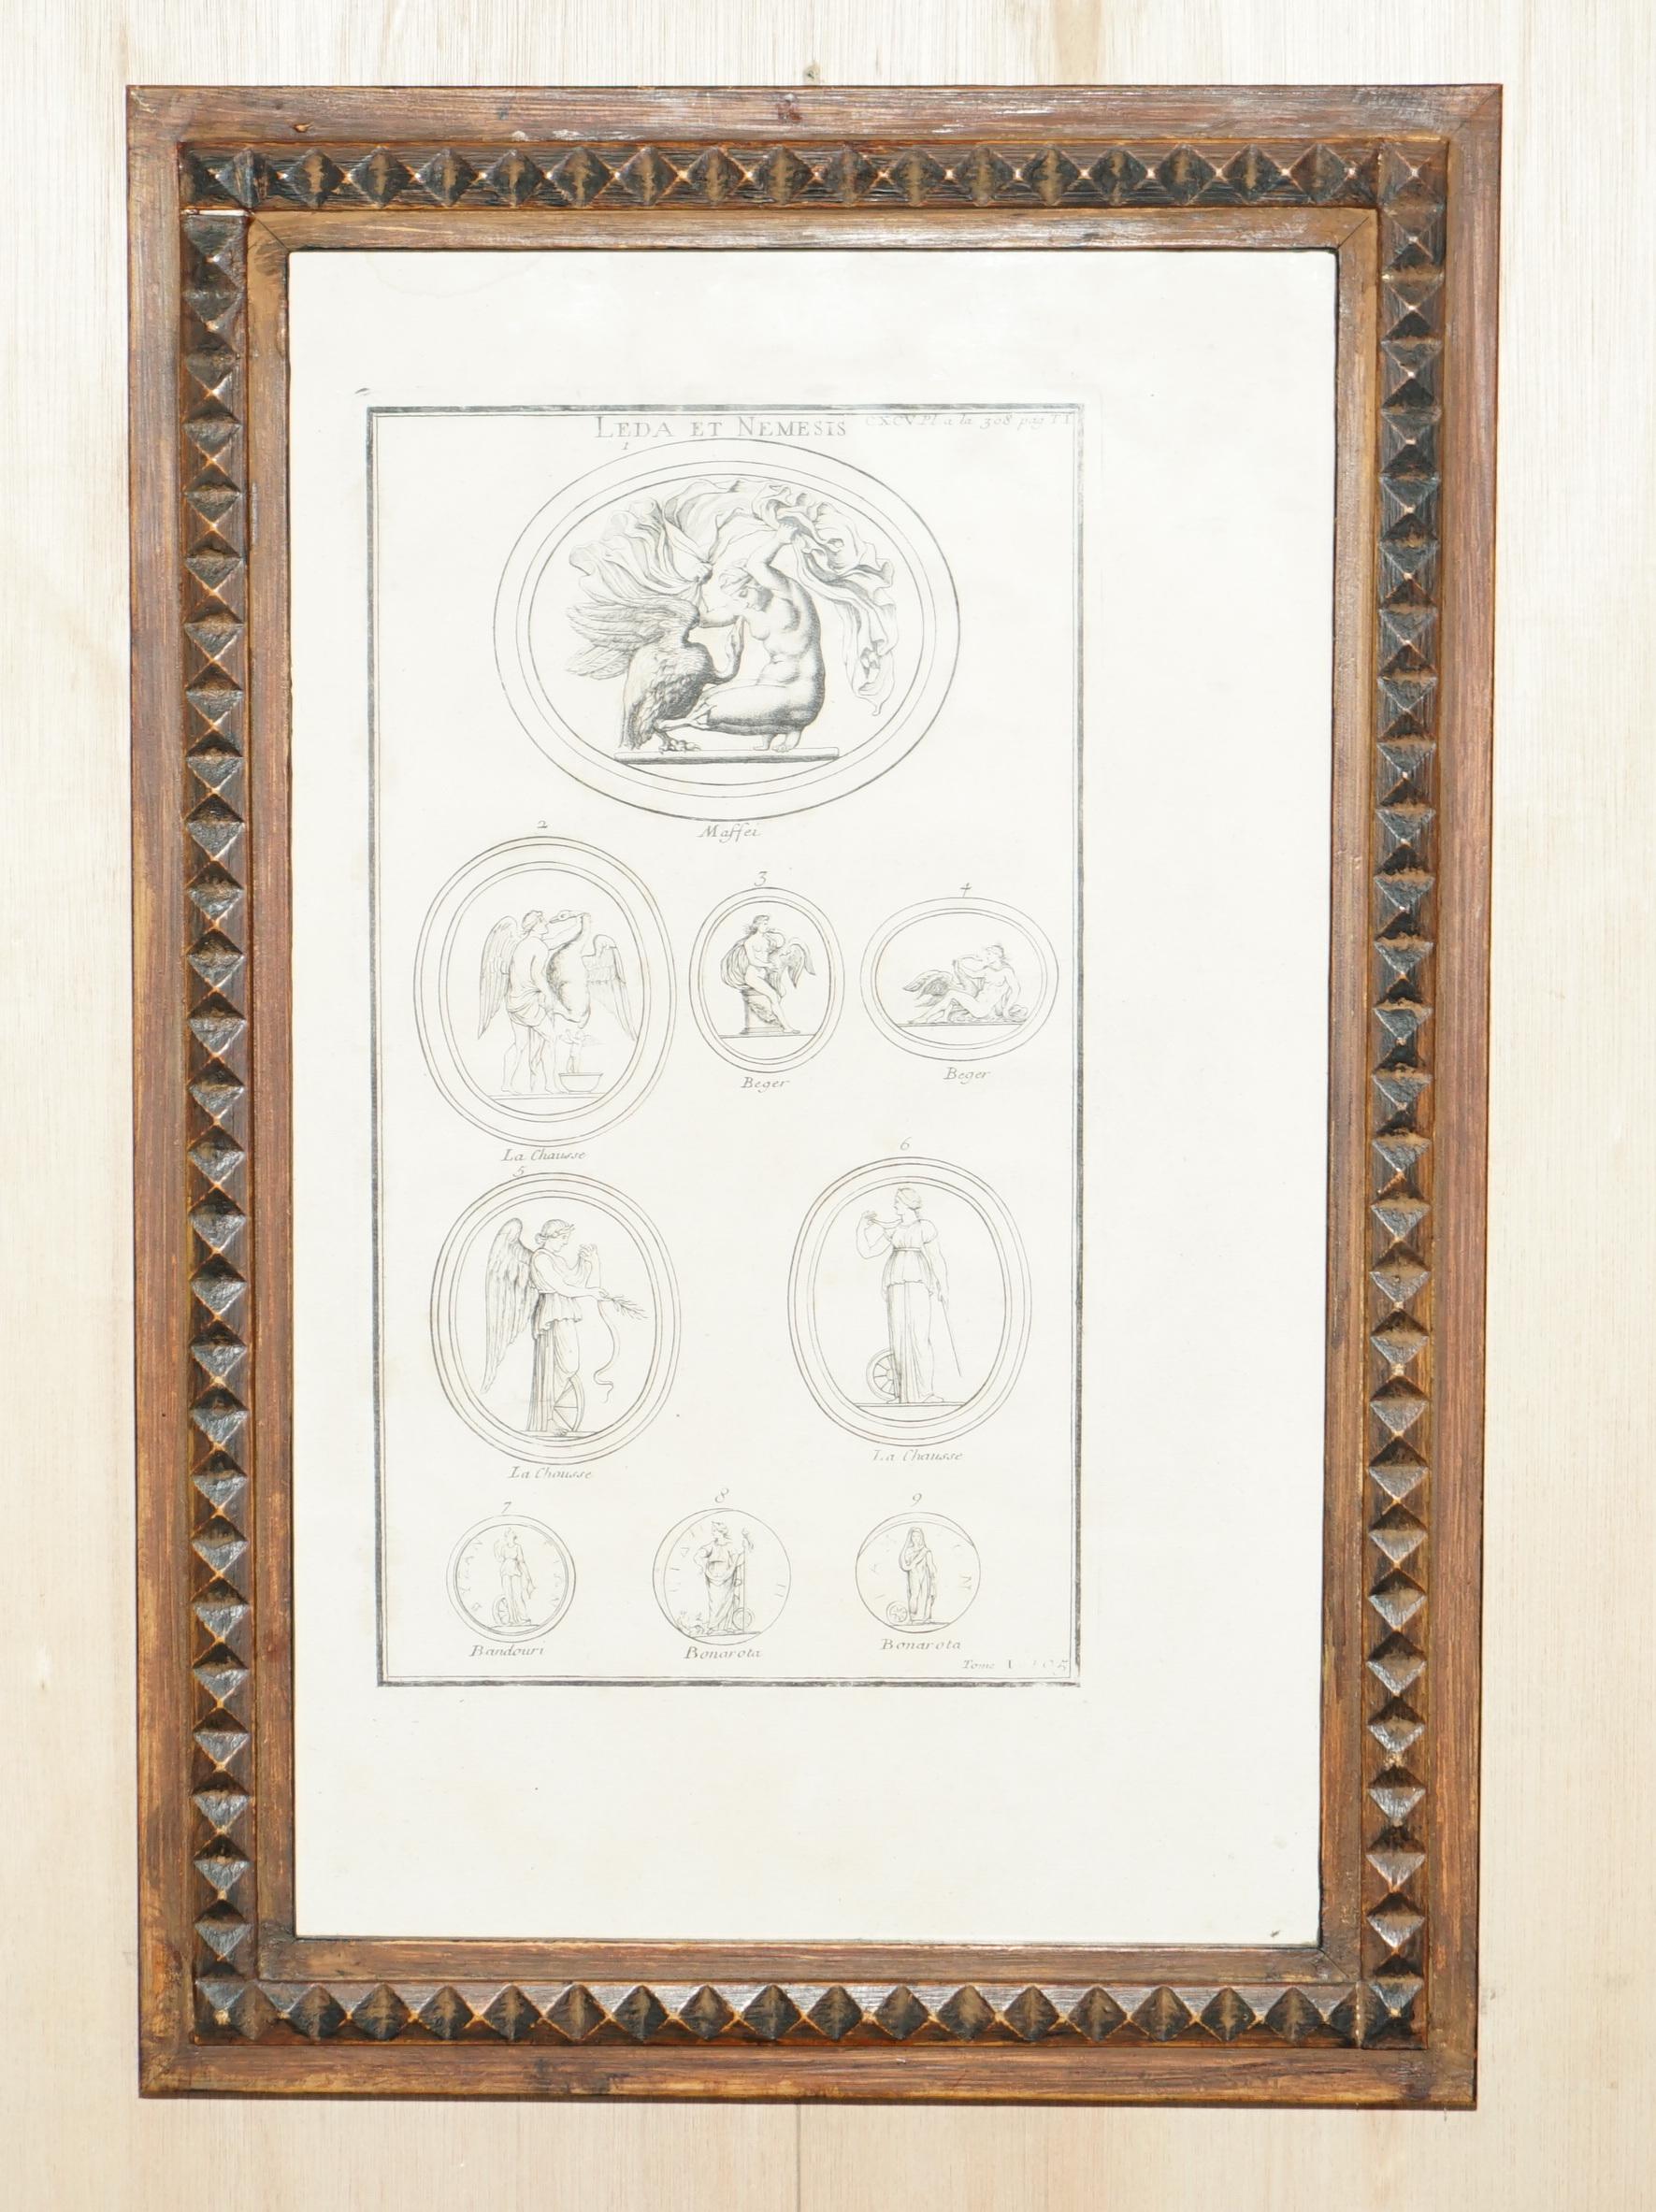 Nous sommes ravis d'offrir à la vente cette belle paire de tirages originaux sur plaque de cuivre datant de 1719 par Bernard De Montfauucon de Paris.

Dom Bernard de Montfaucon, O.S.B. (français : [d ? m?~fok?~] ; 13 janvier 1655 - 21 décembre